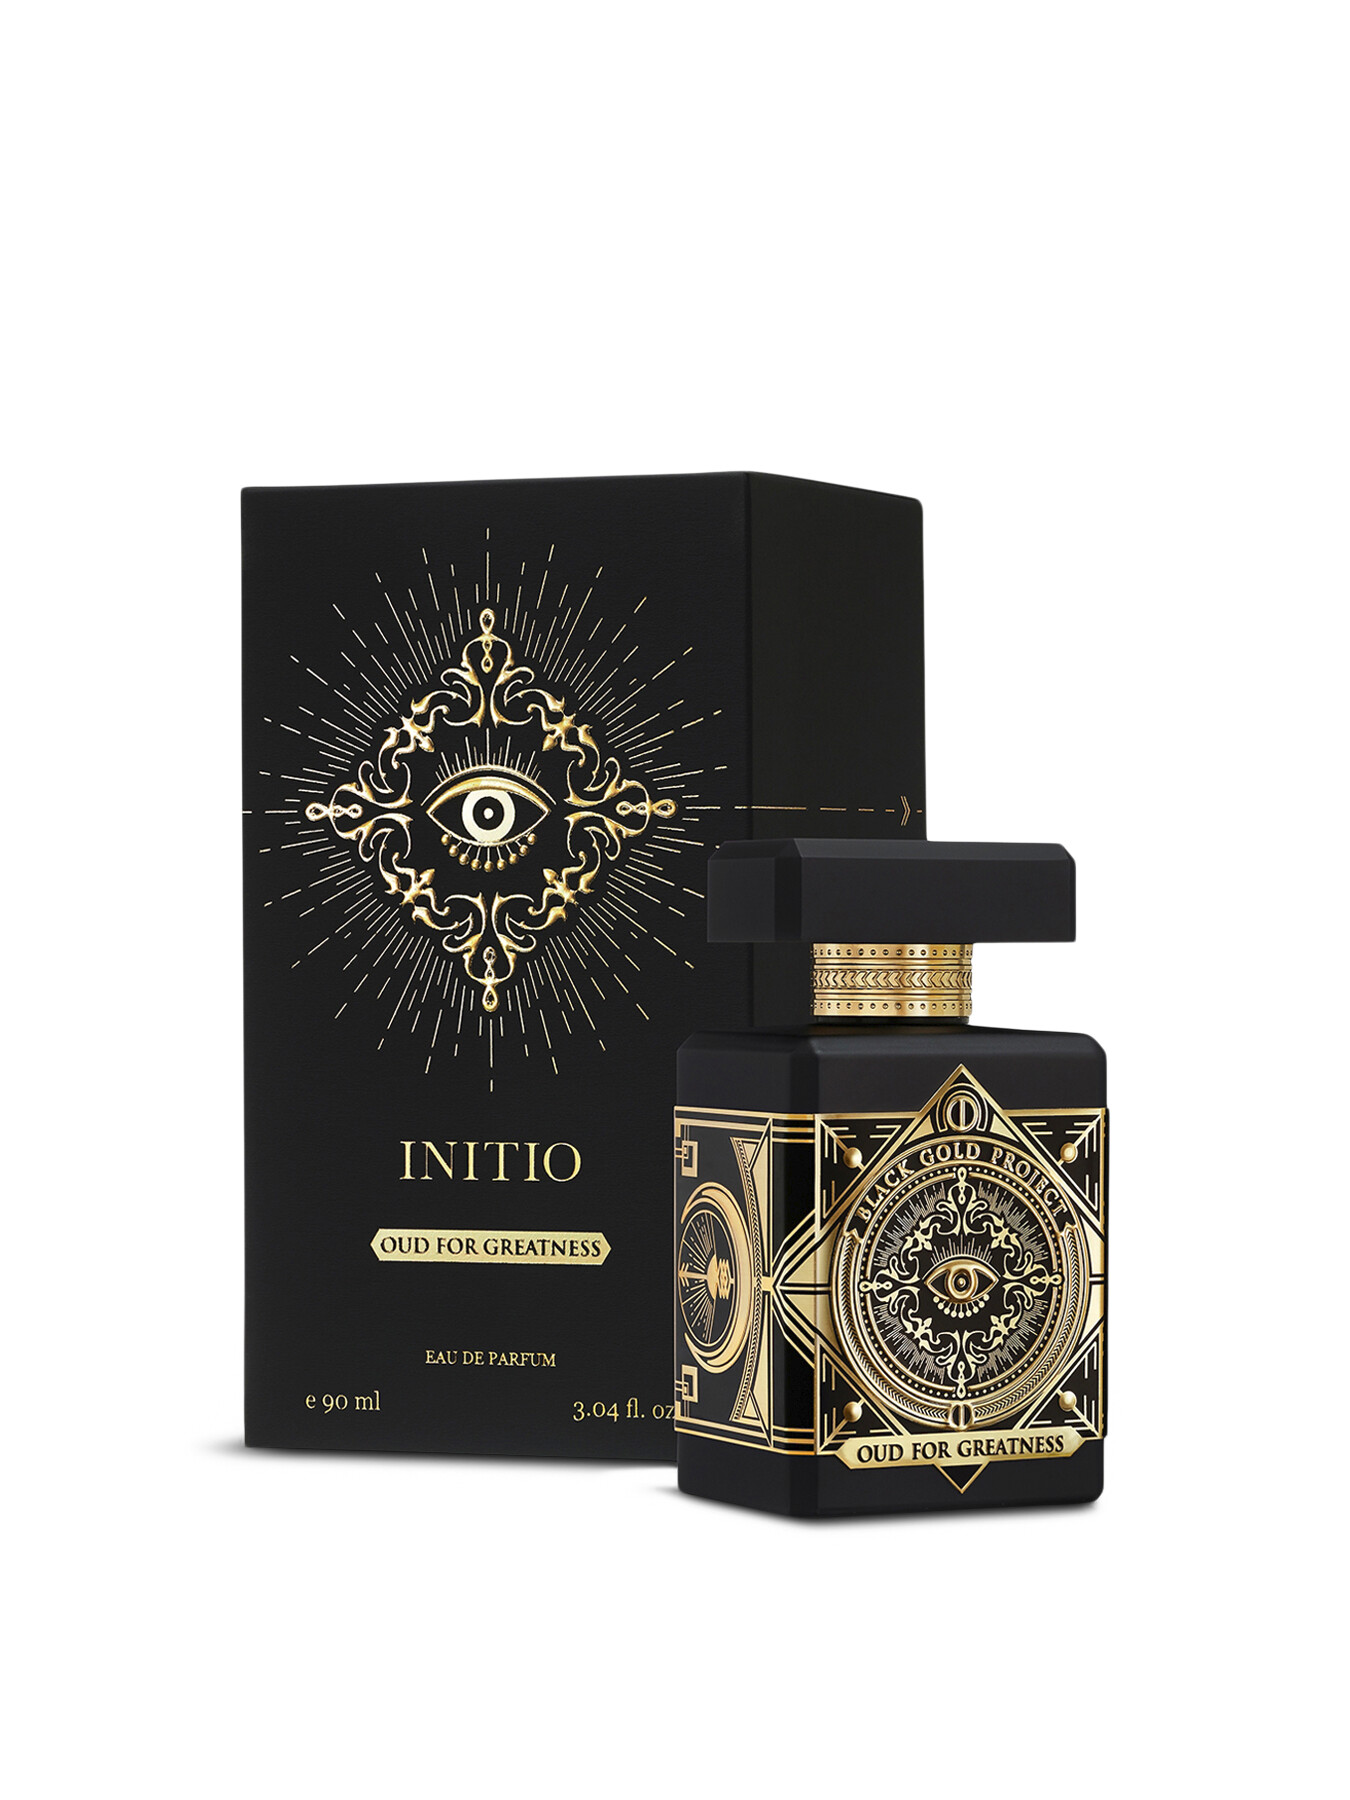 Initio Oud For Greatness Eau De Parfum 90ml